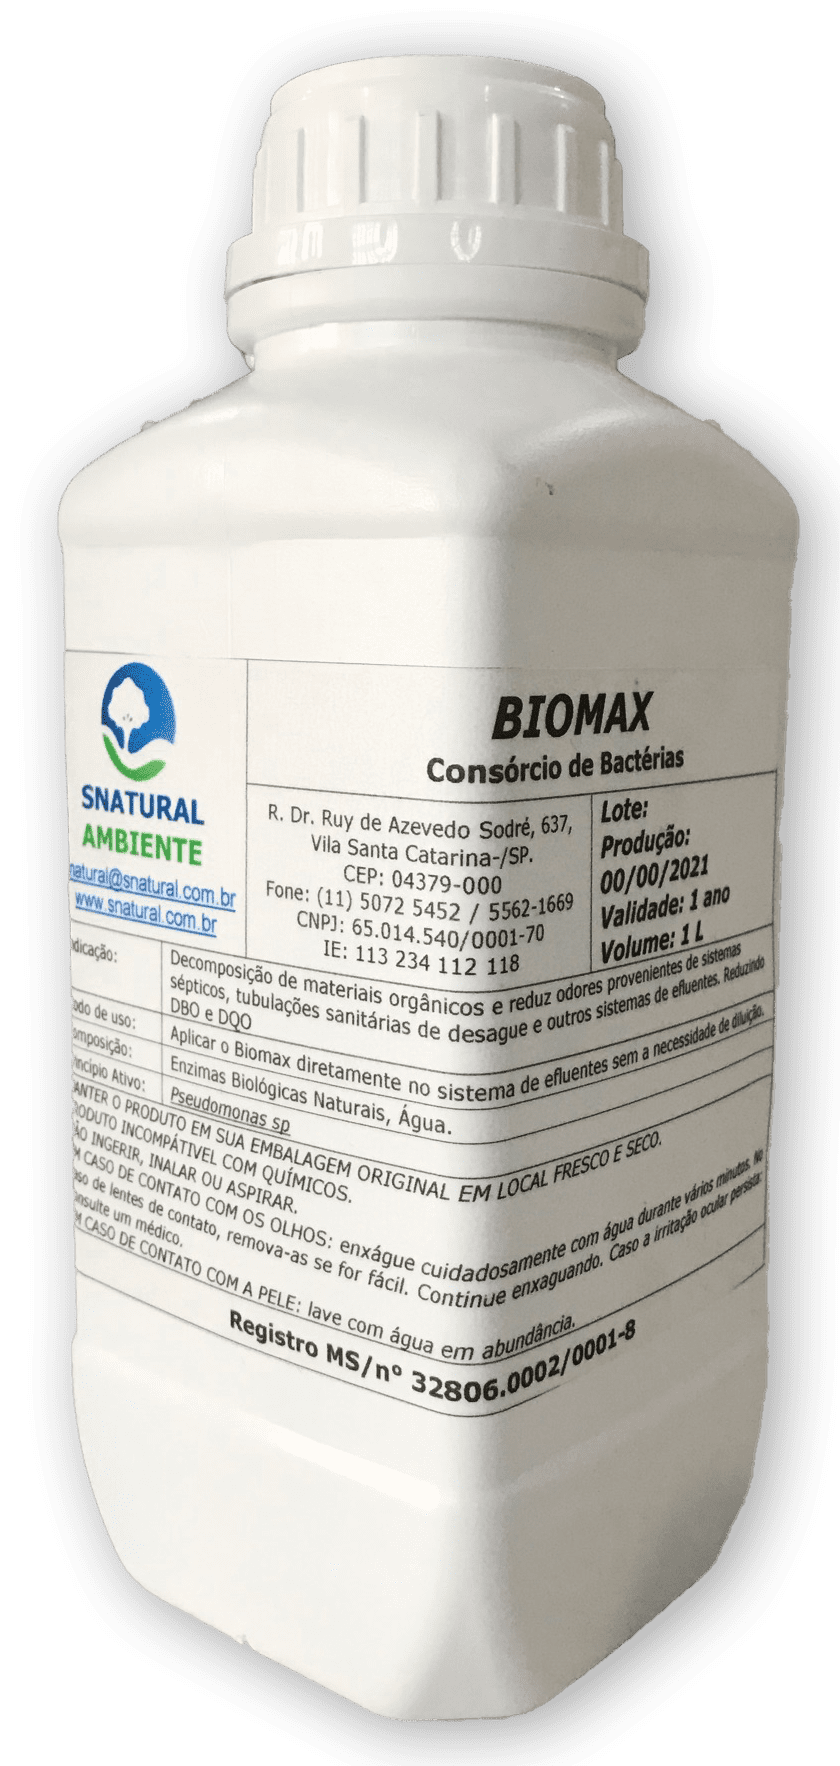 Biomax - Microrganismos para Tratamento de Efluentes